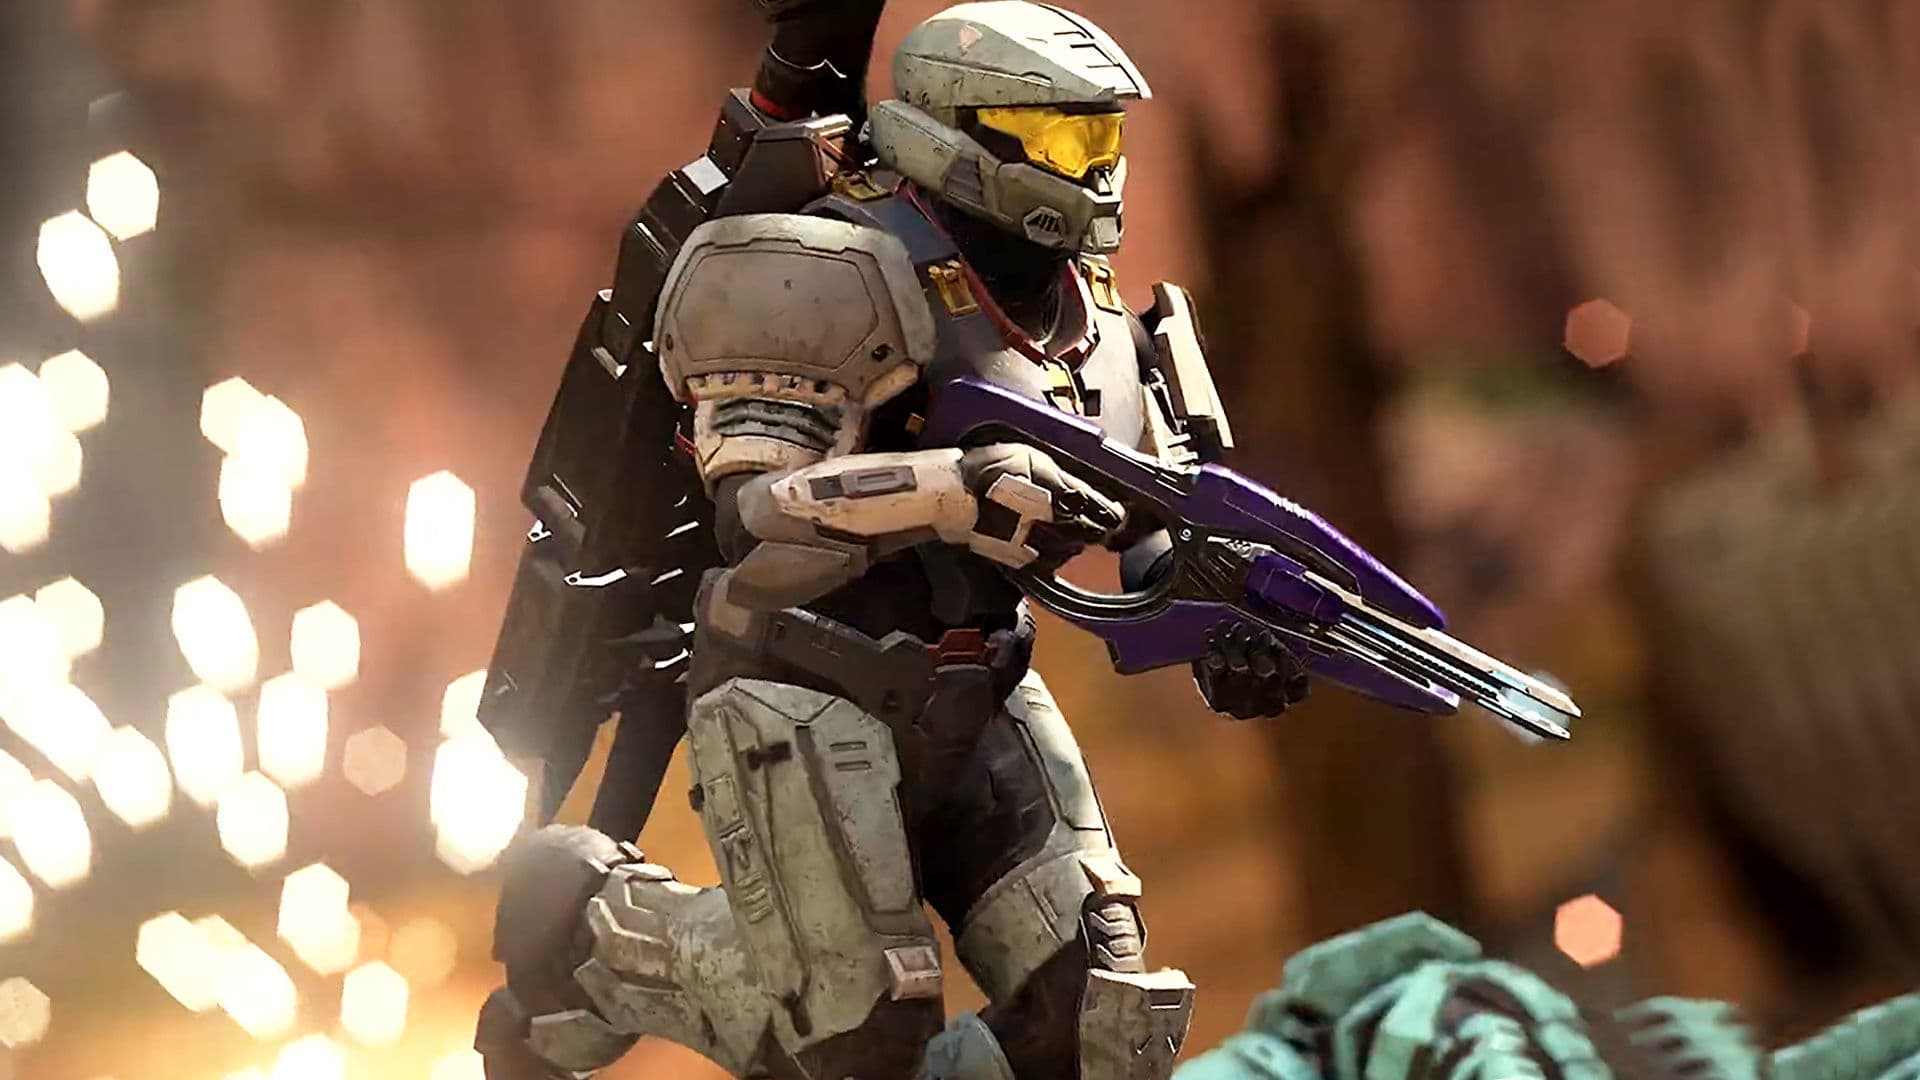 Halo Infinite is de multiplayershooter die we dit najaar willen spelen